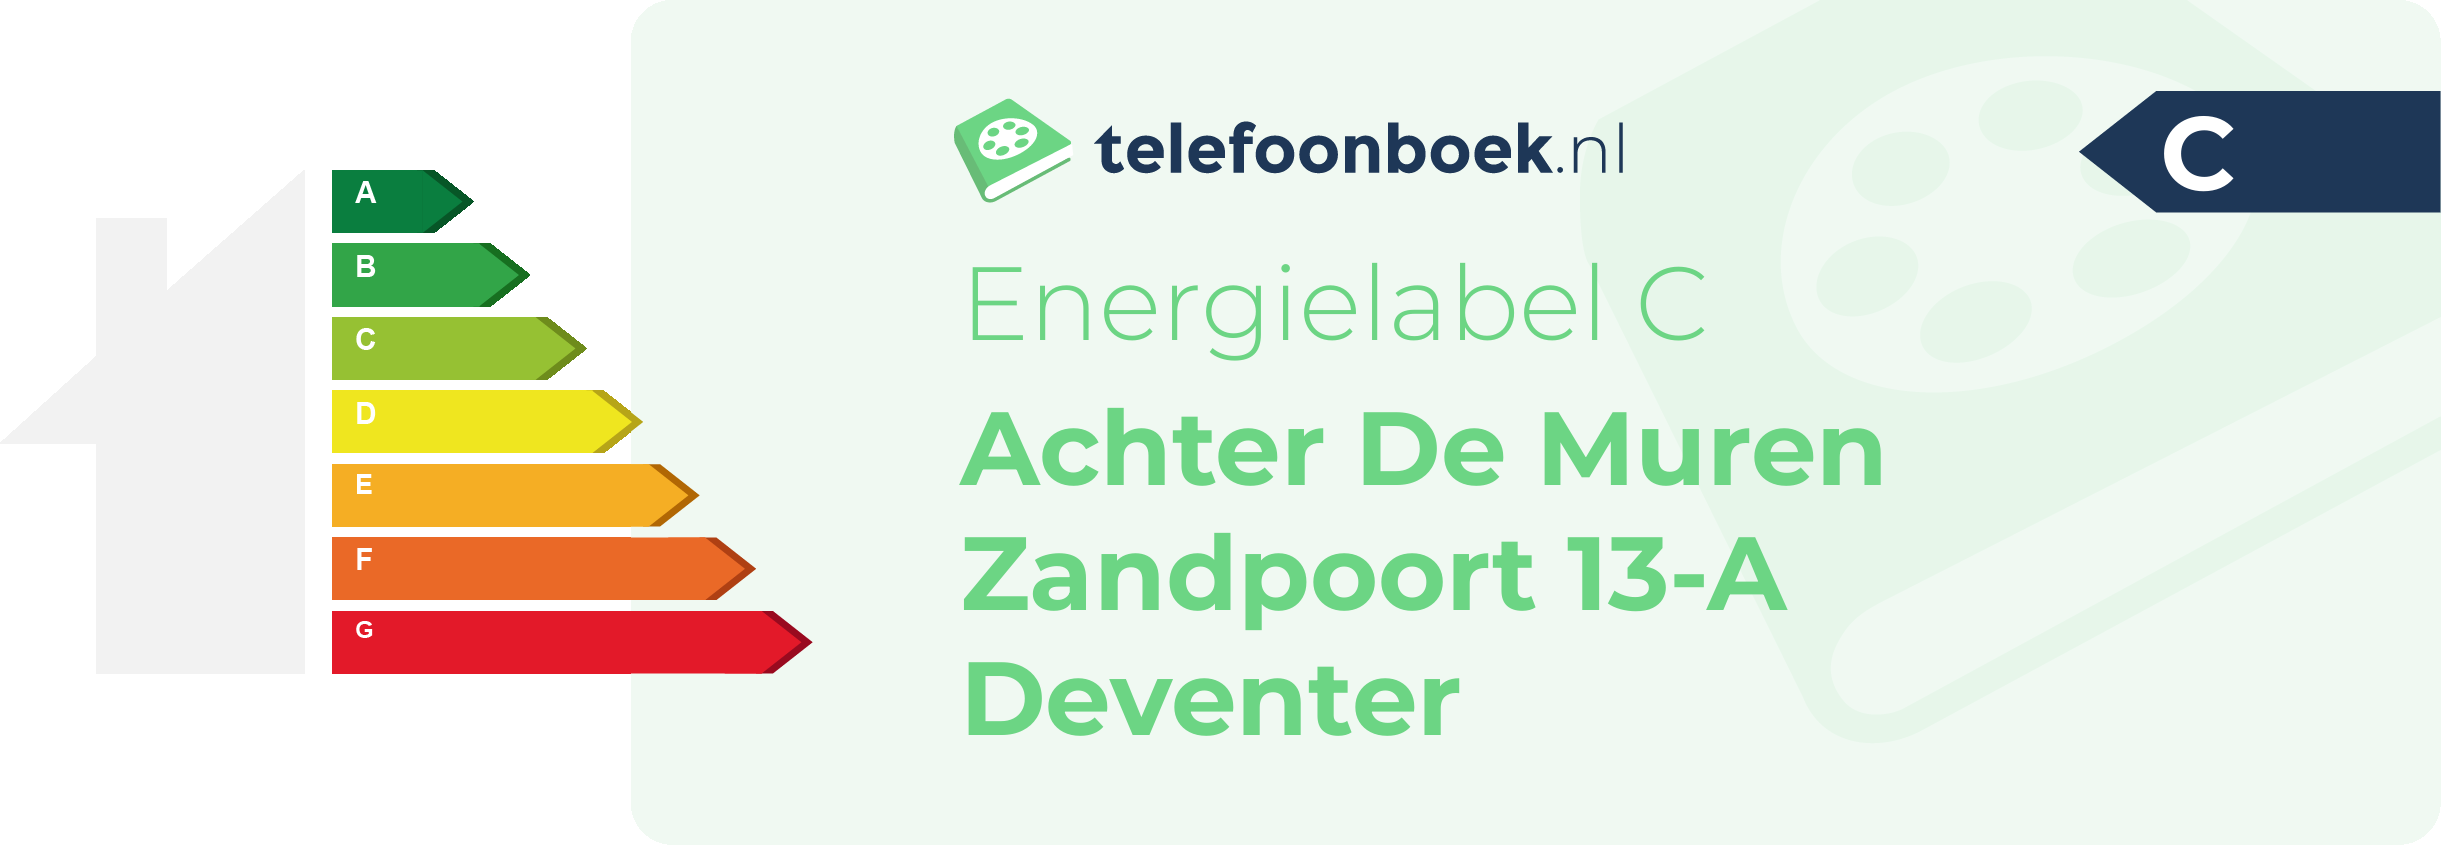 Energielabel Achter De Muren Zandpoort 13-A Deventer